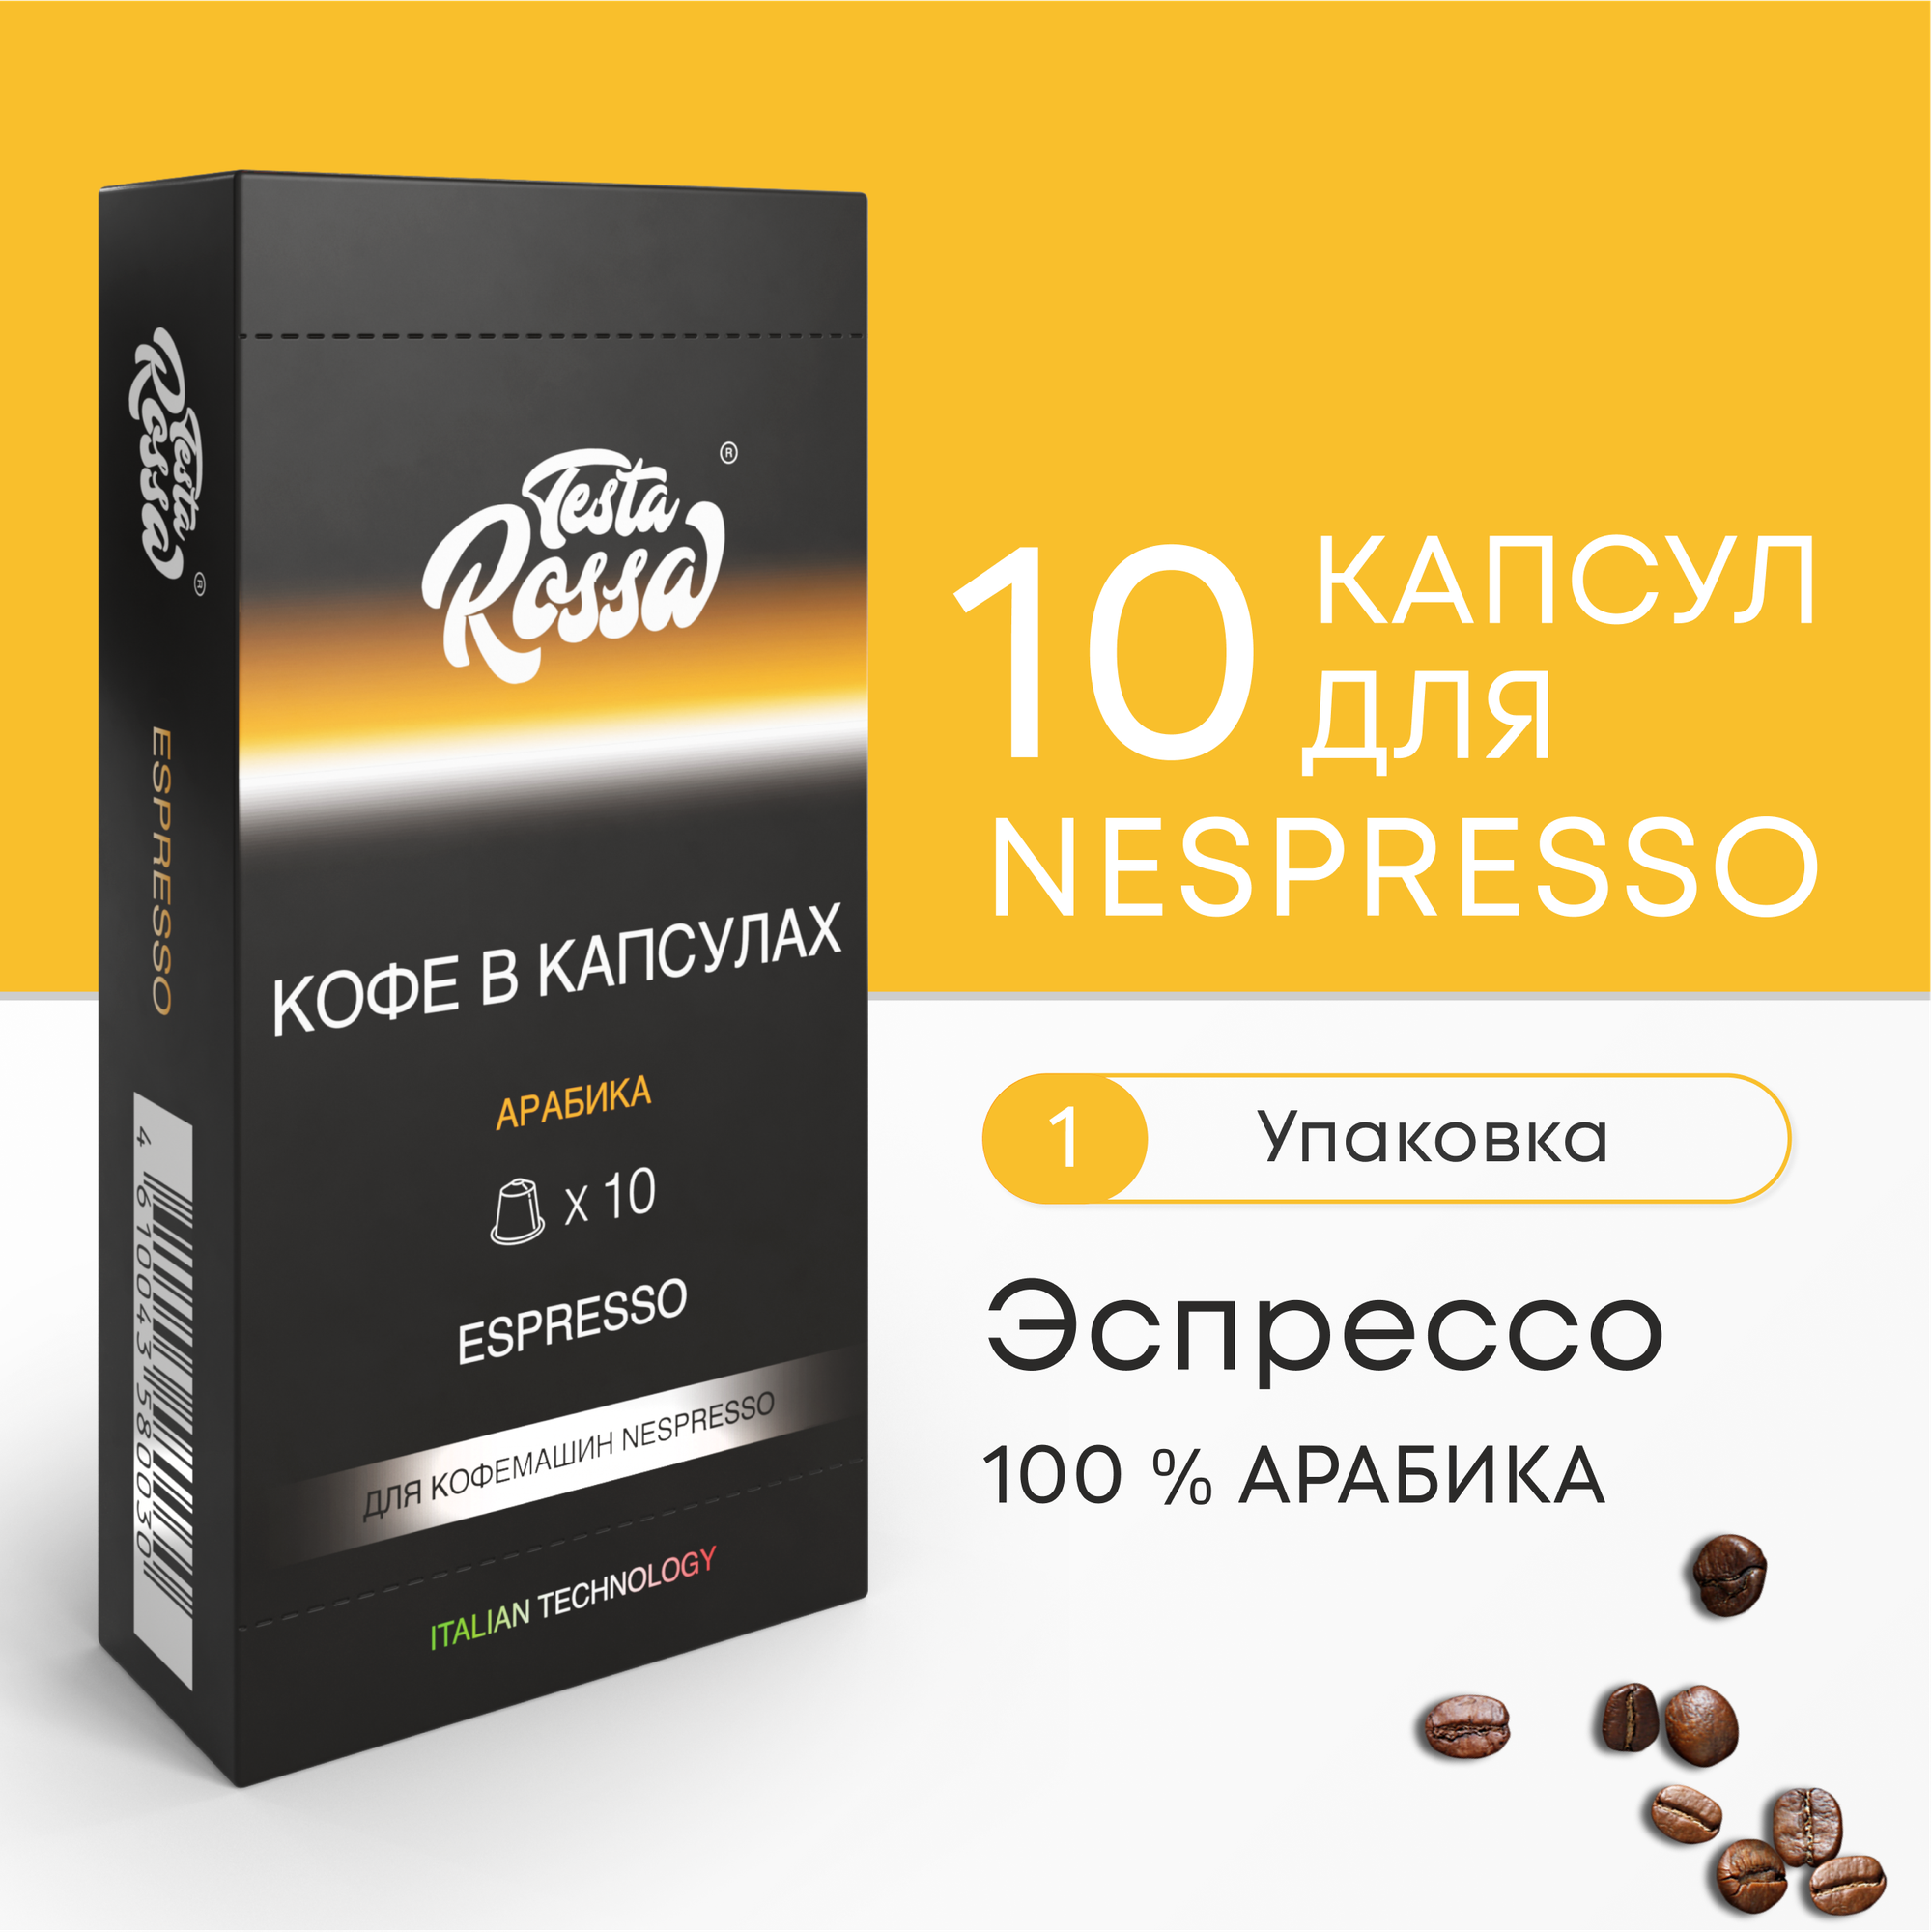 Эспрессо Арабика 100% - Капсулы Testa Rossa - 10 шт, набор кофе в капсулах неспрессо, для кофемашины NESPRESSO